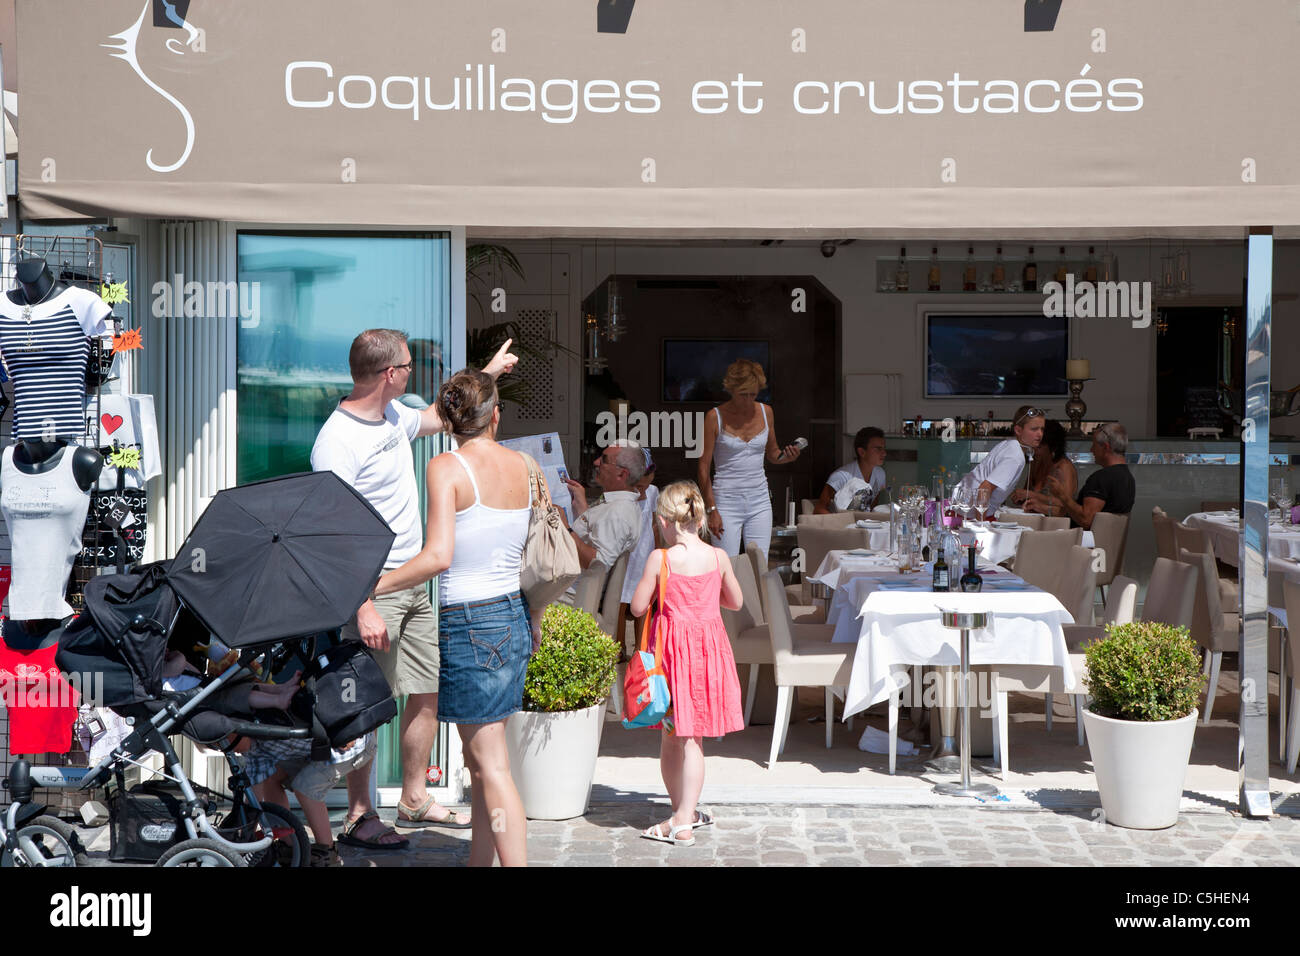 Seafront shops and restaurants, Saint Tropez, Cote d'Azure, Provence, France. Stock Photo